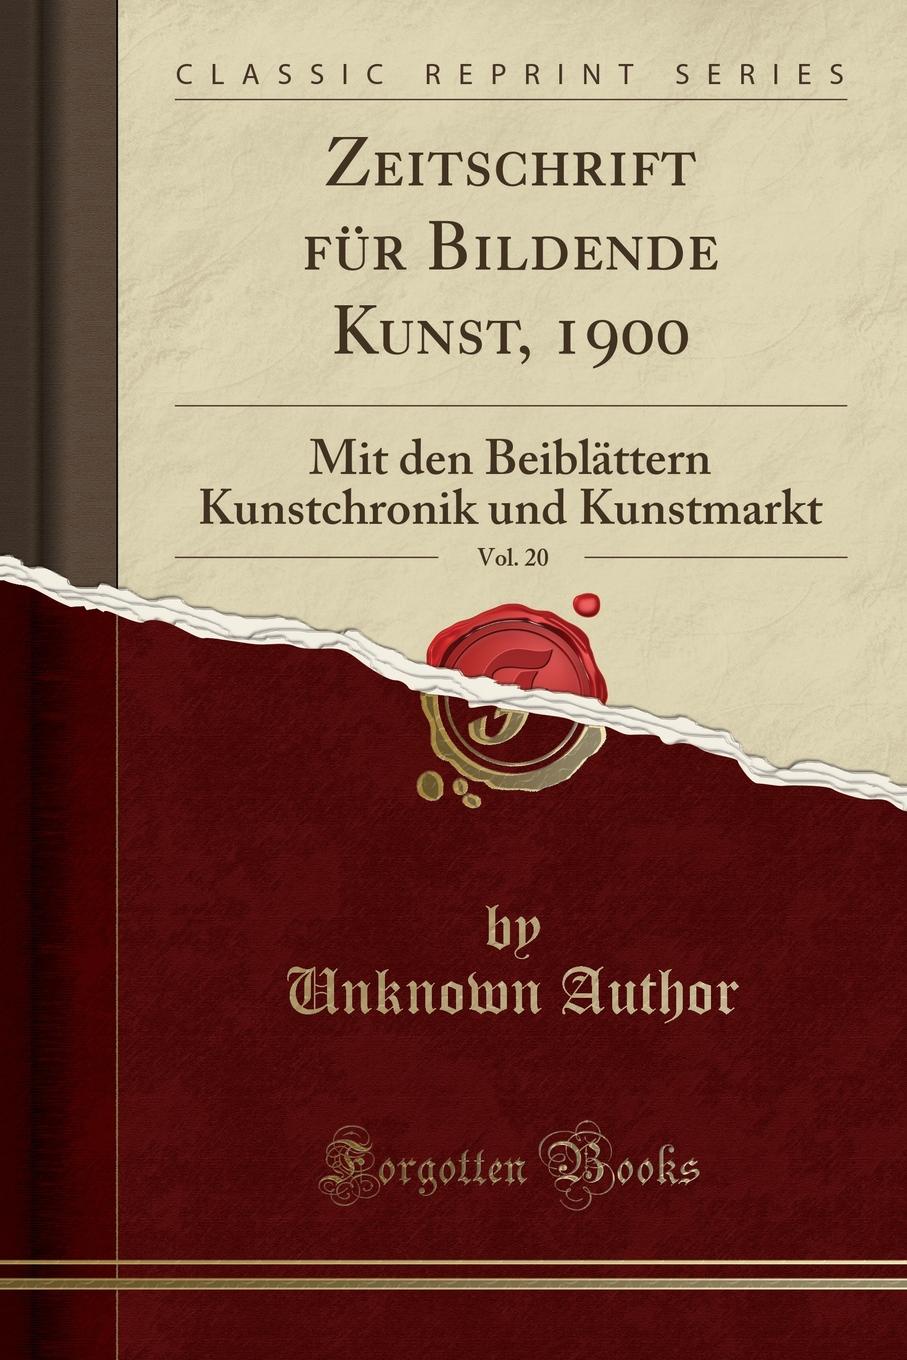 фото Zeitschrift fur Bildende Kunst, 1900, Vol. 20. Mit den Beiblattern Kunstchronik und Kunstmarkt (Classic Reprint)